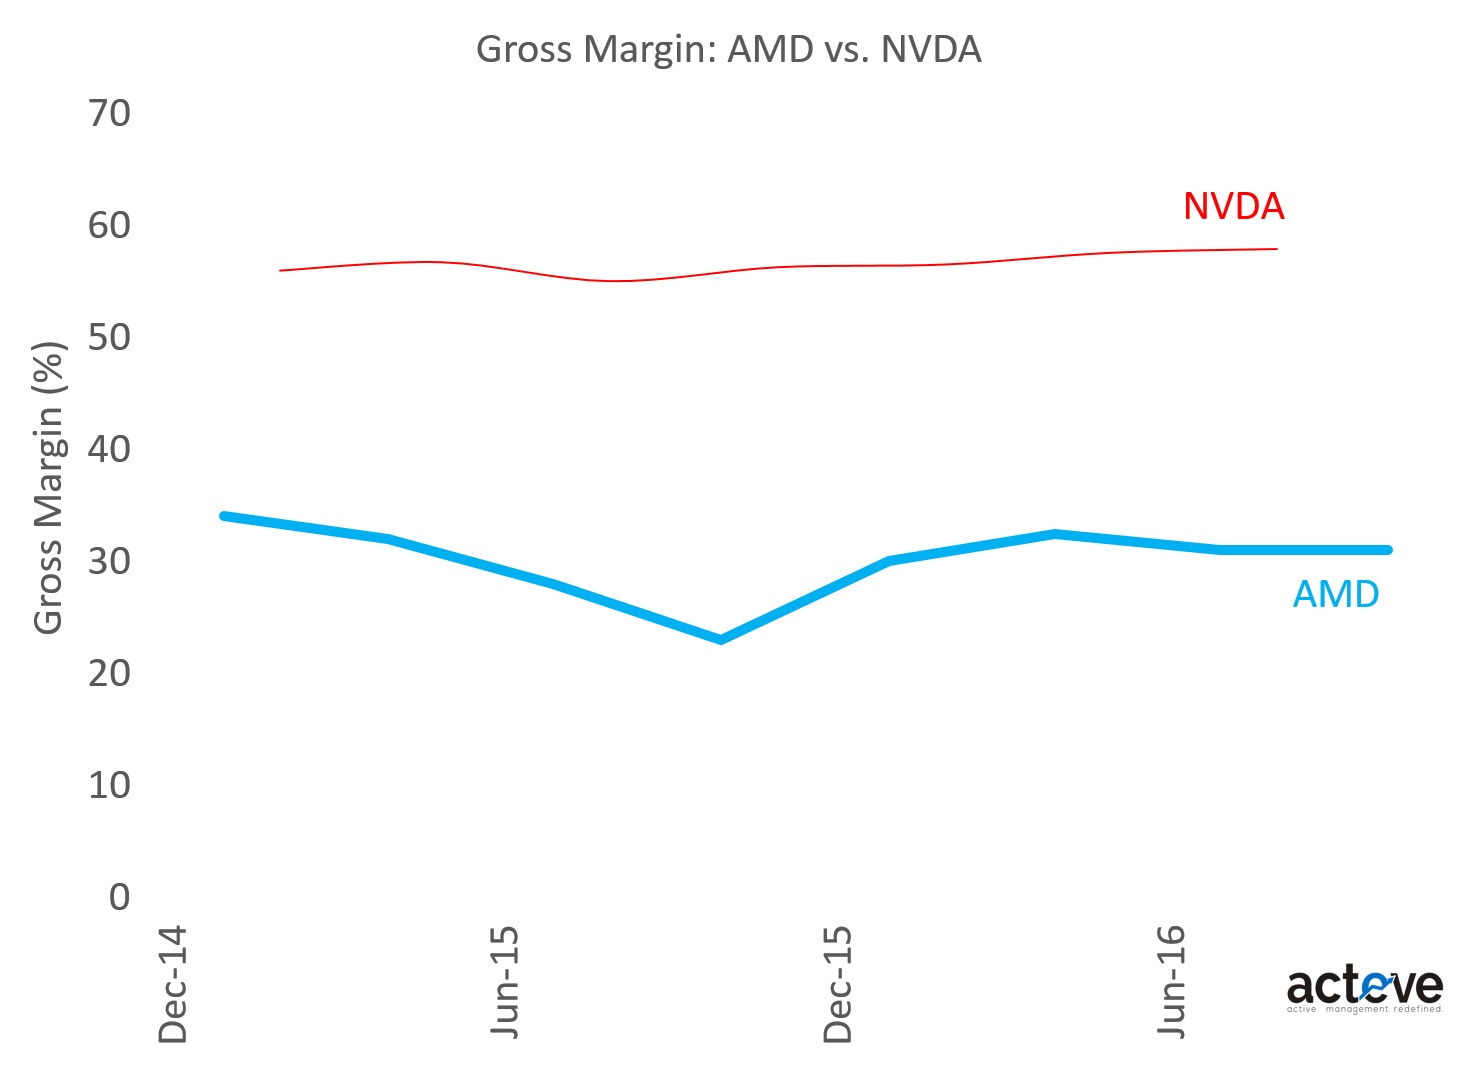 AMD vs. NVDA Gross Margins